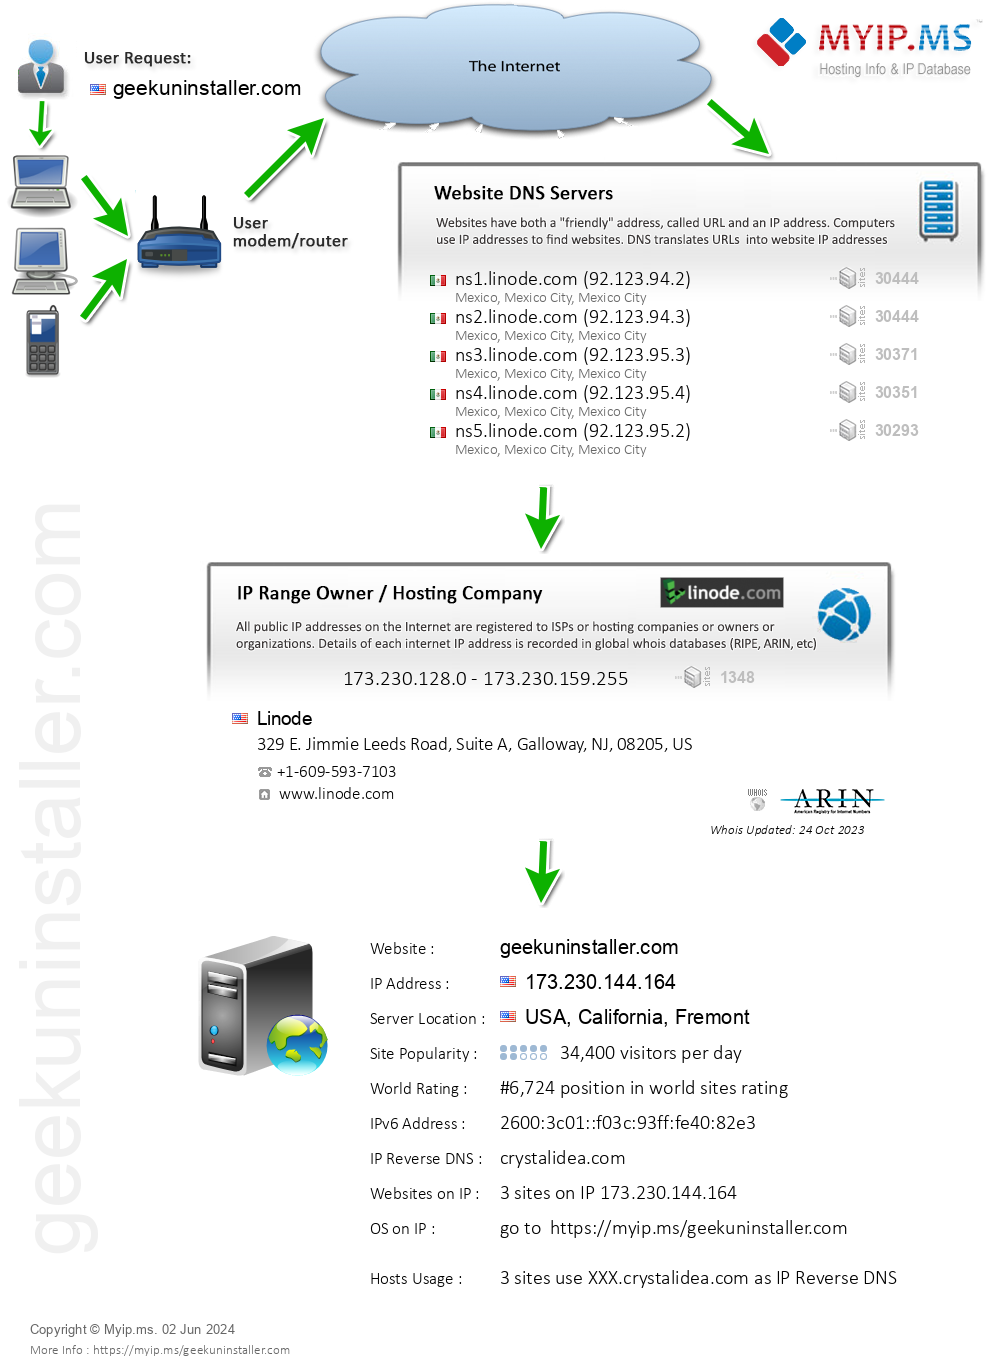 Geekuninstaller.com - Website Hosting Visual IP Diagram